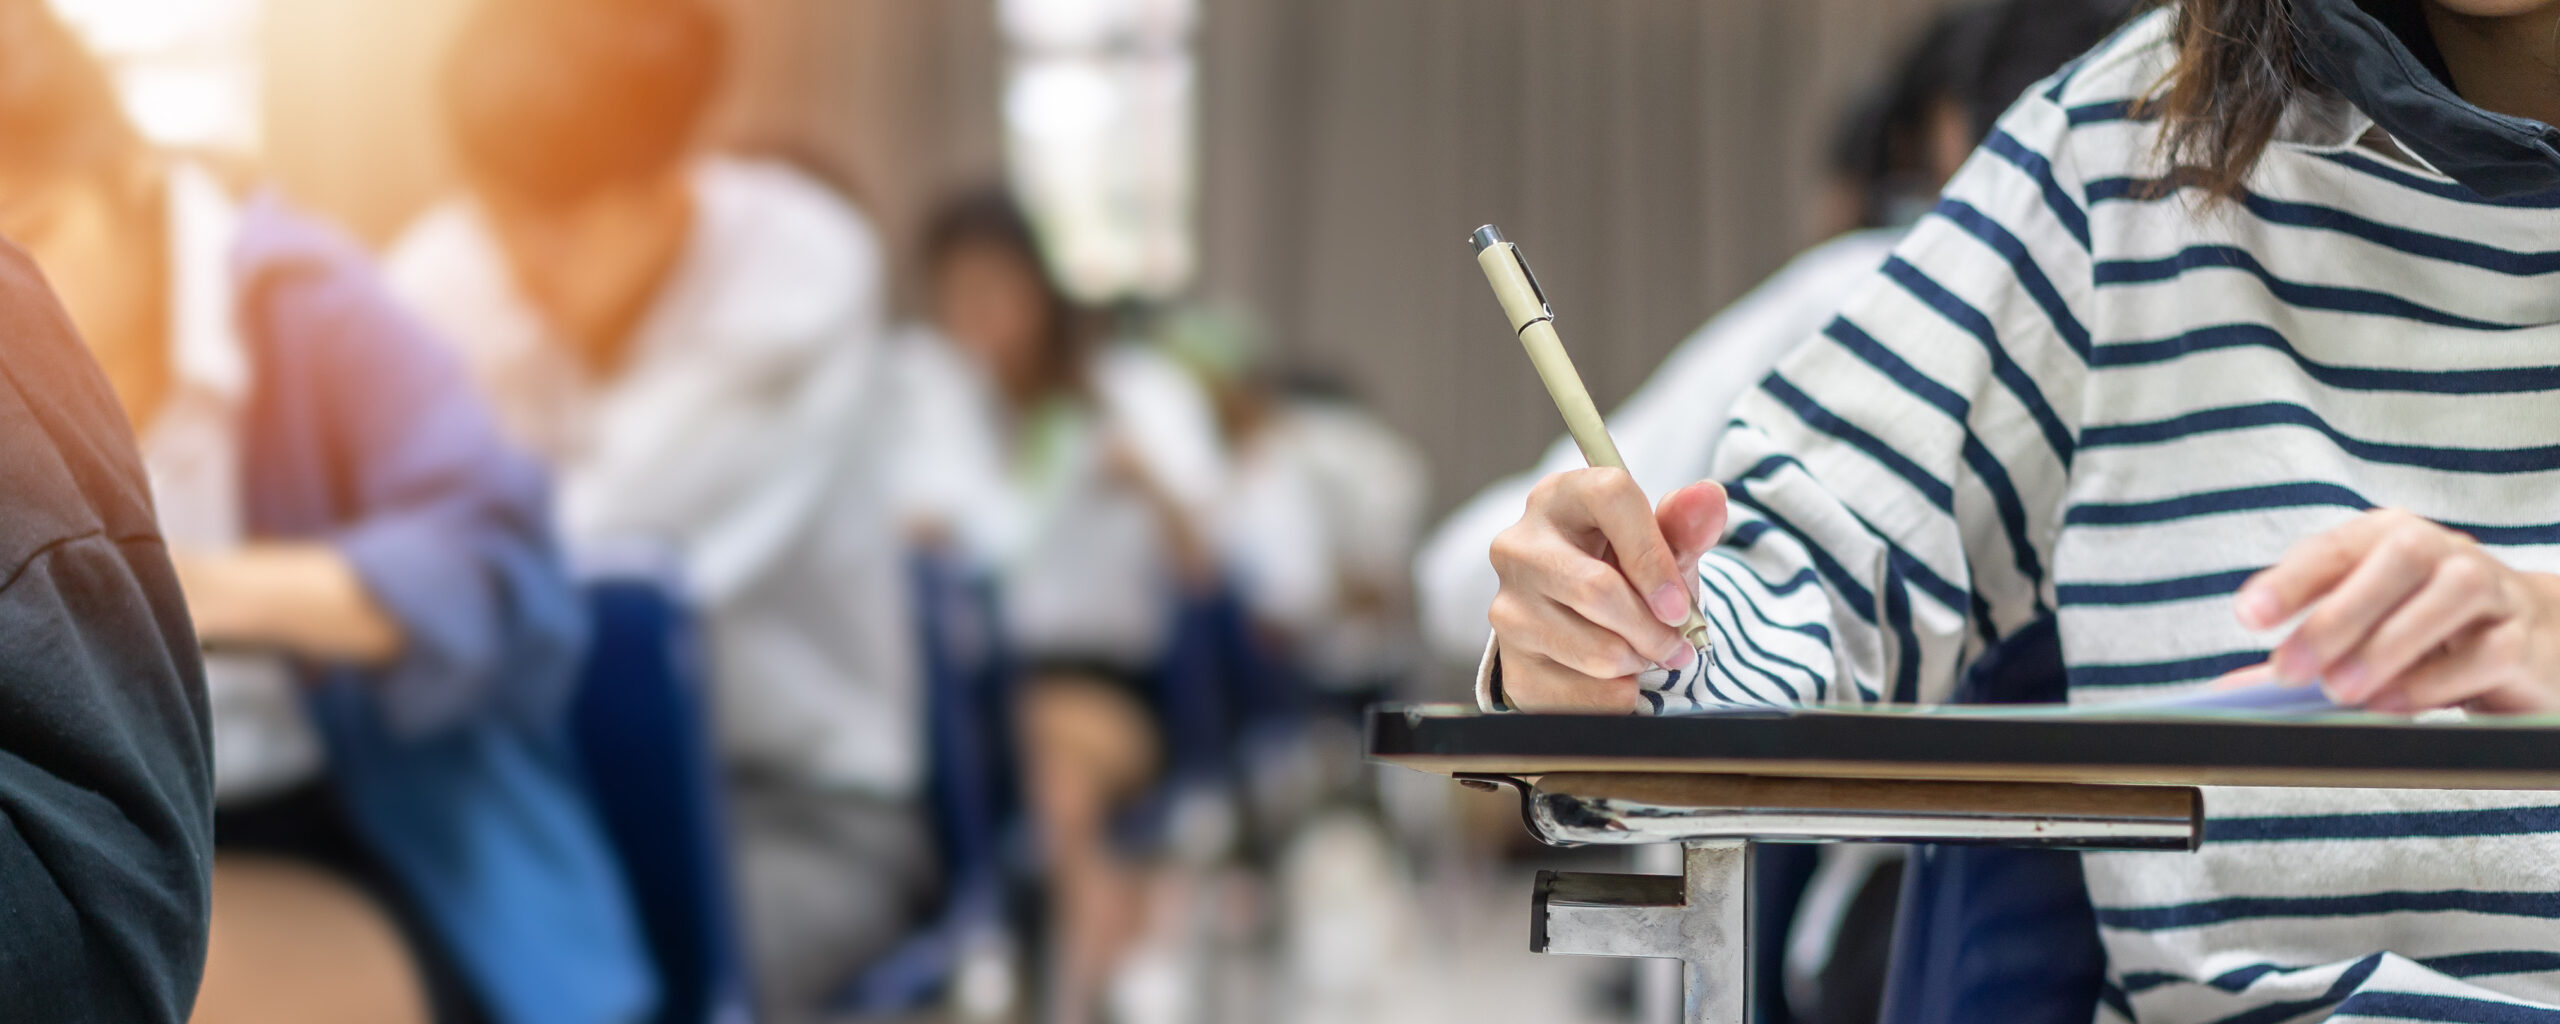 Zbliżenie na rękę studenta piszącego na kartce podczas egzaminu.